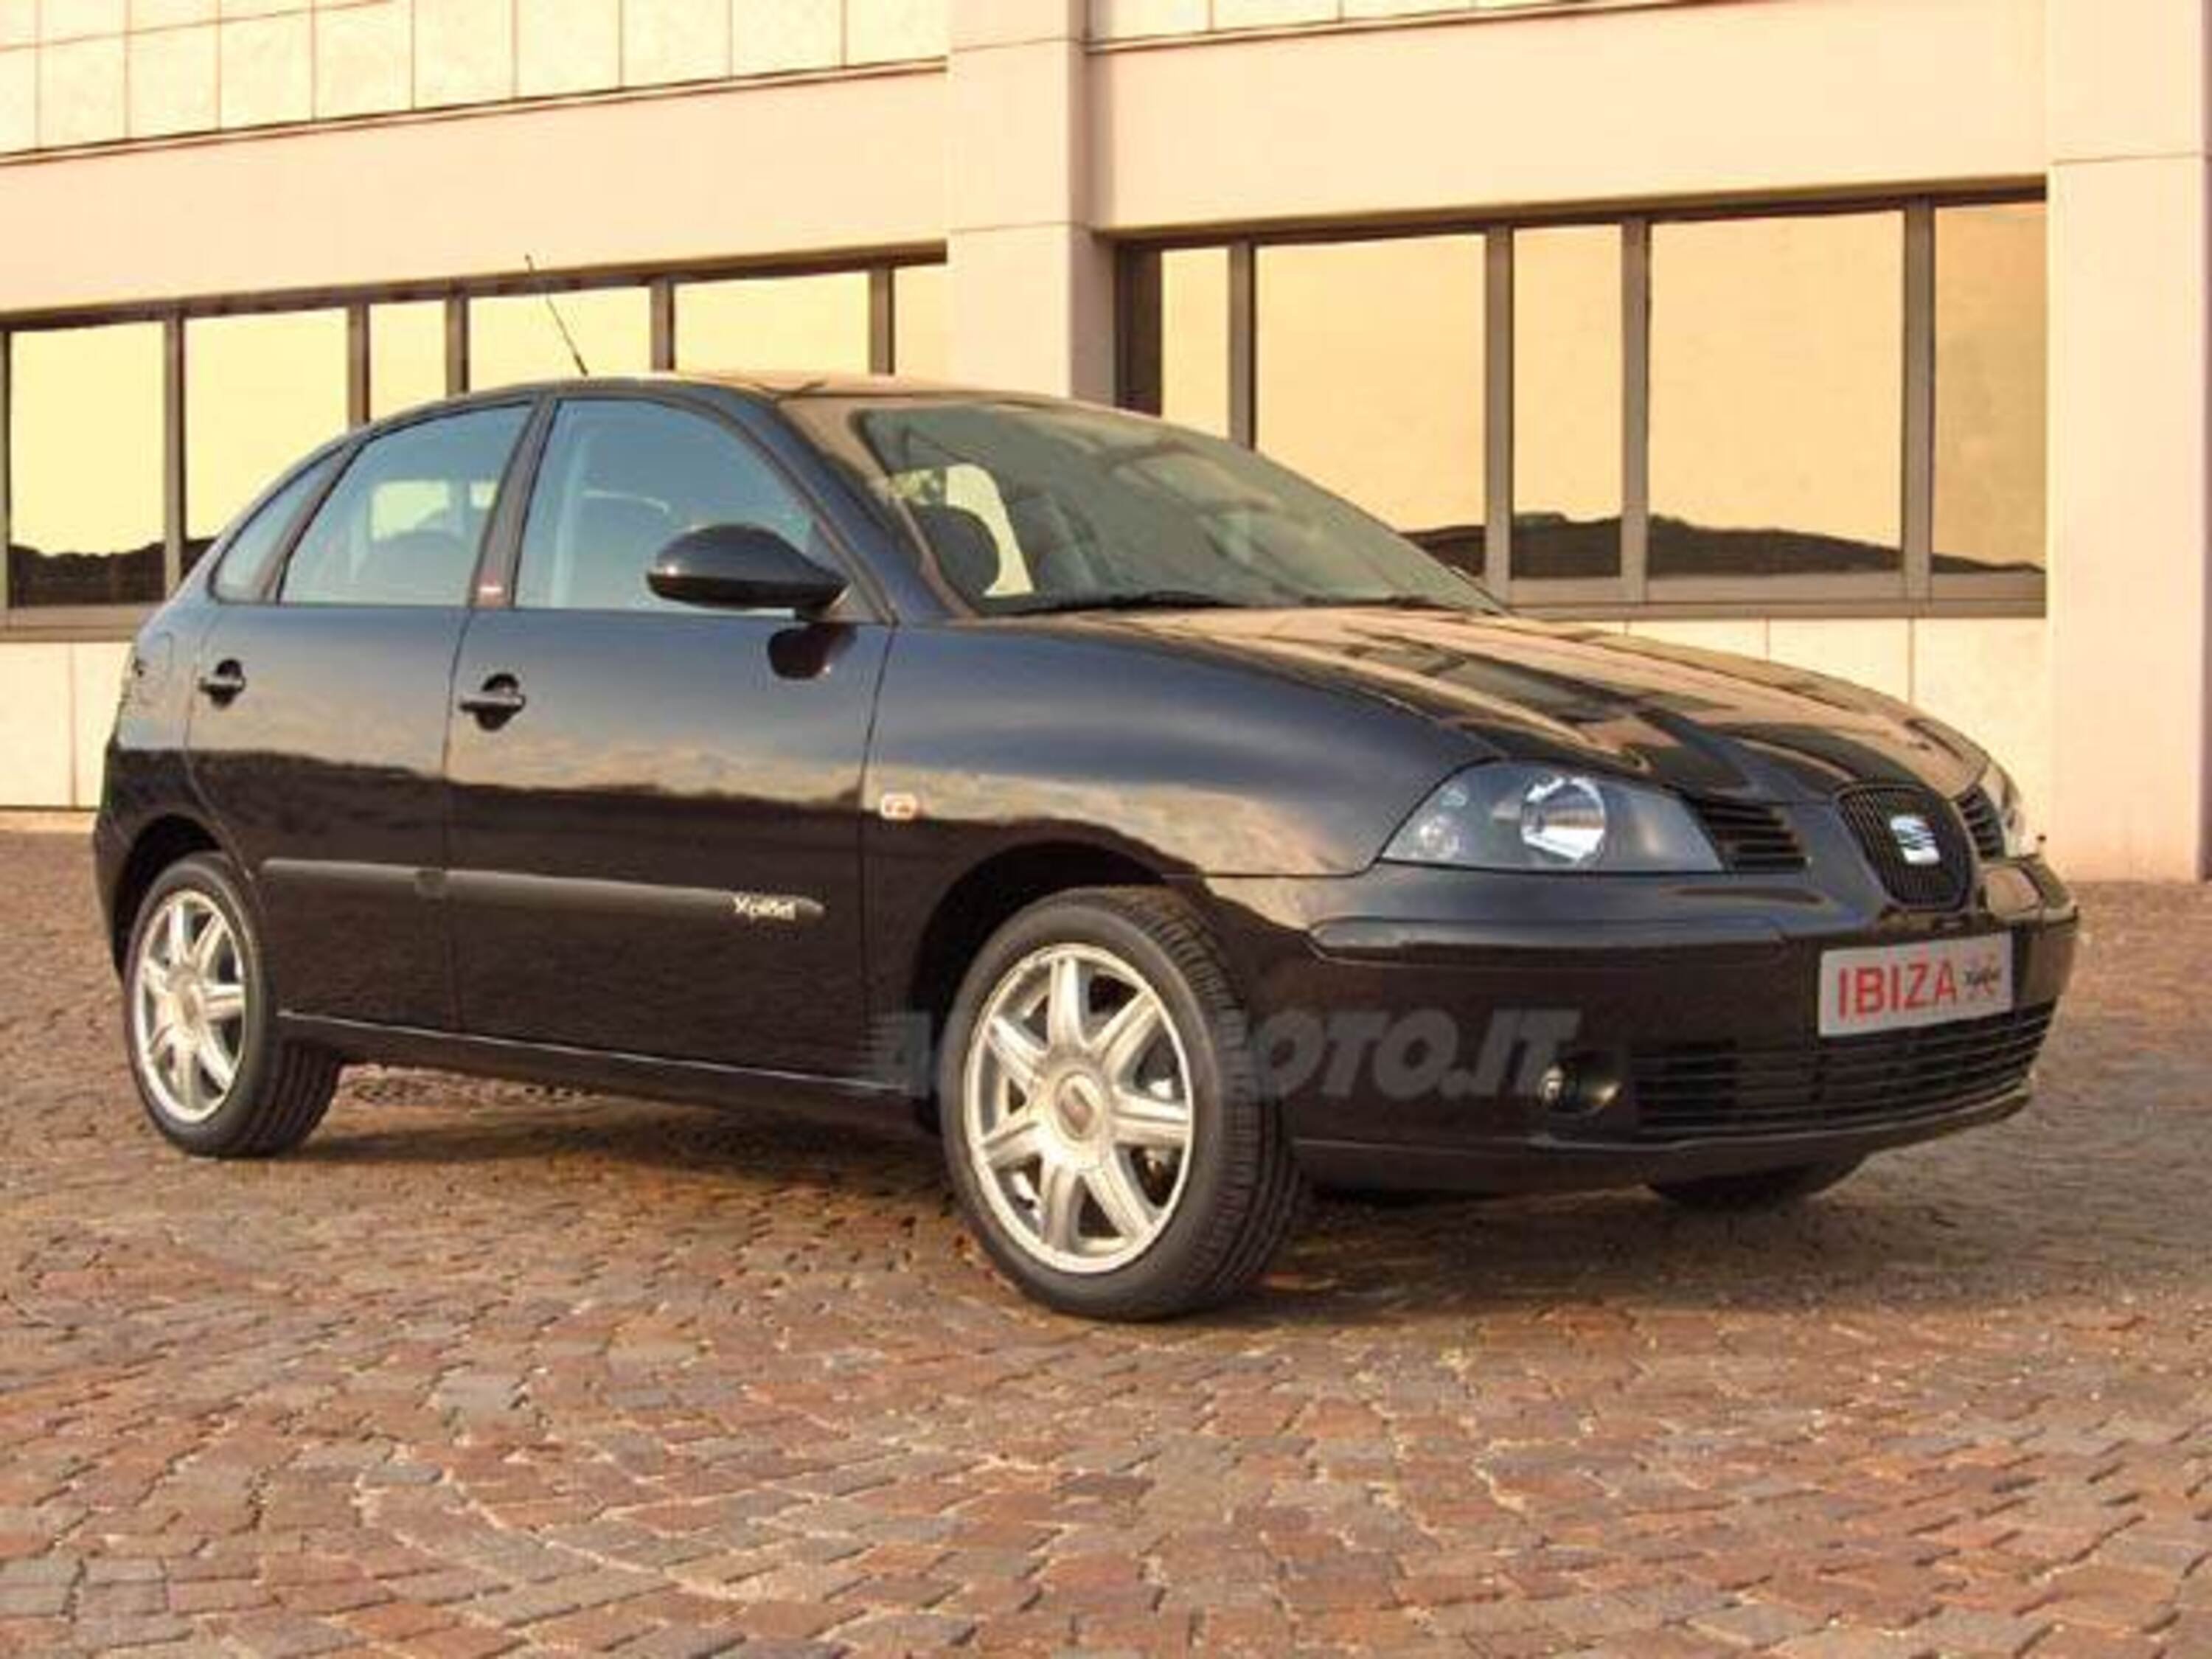 SEAT Ibiza 1.4 5p. Xplod (02/2005 - prezzo e tecnica - Automoto.it